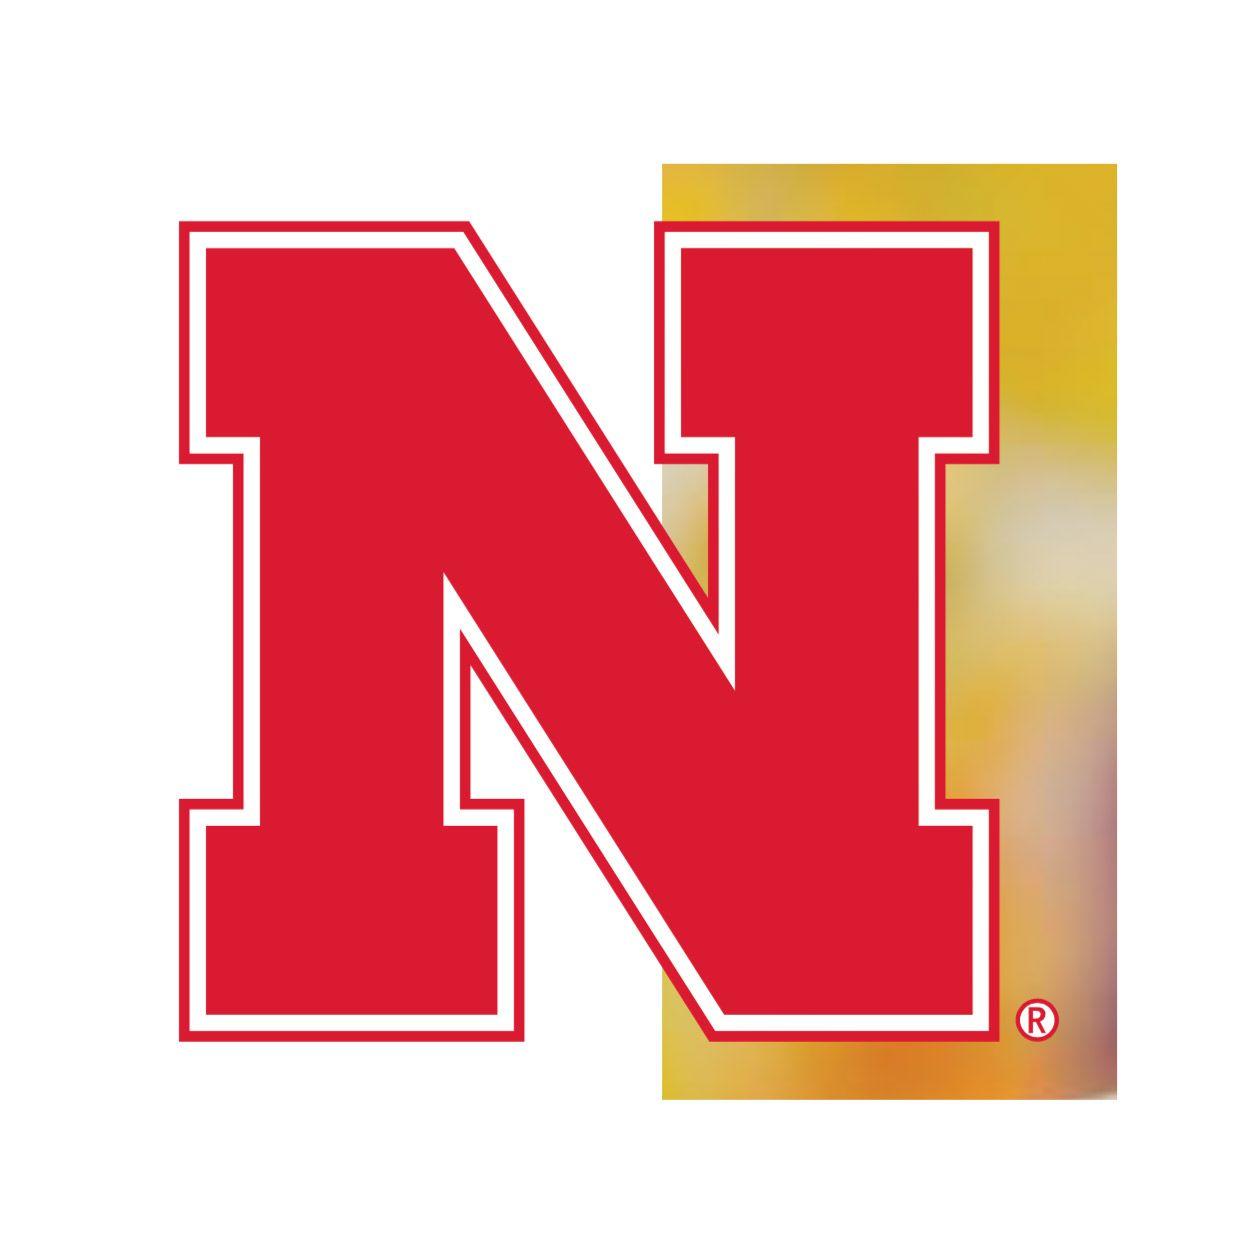 Nebraska N Logo - Our Marks | University Communication | Nebraska